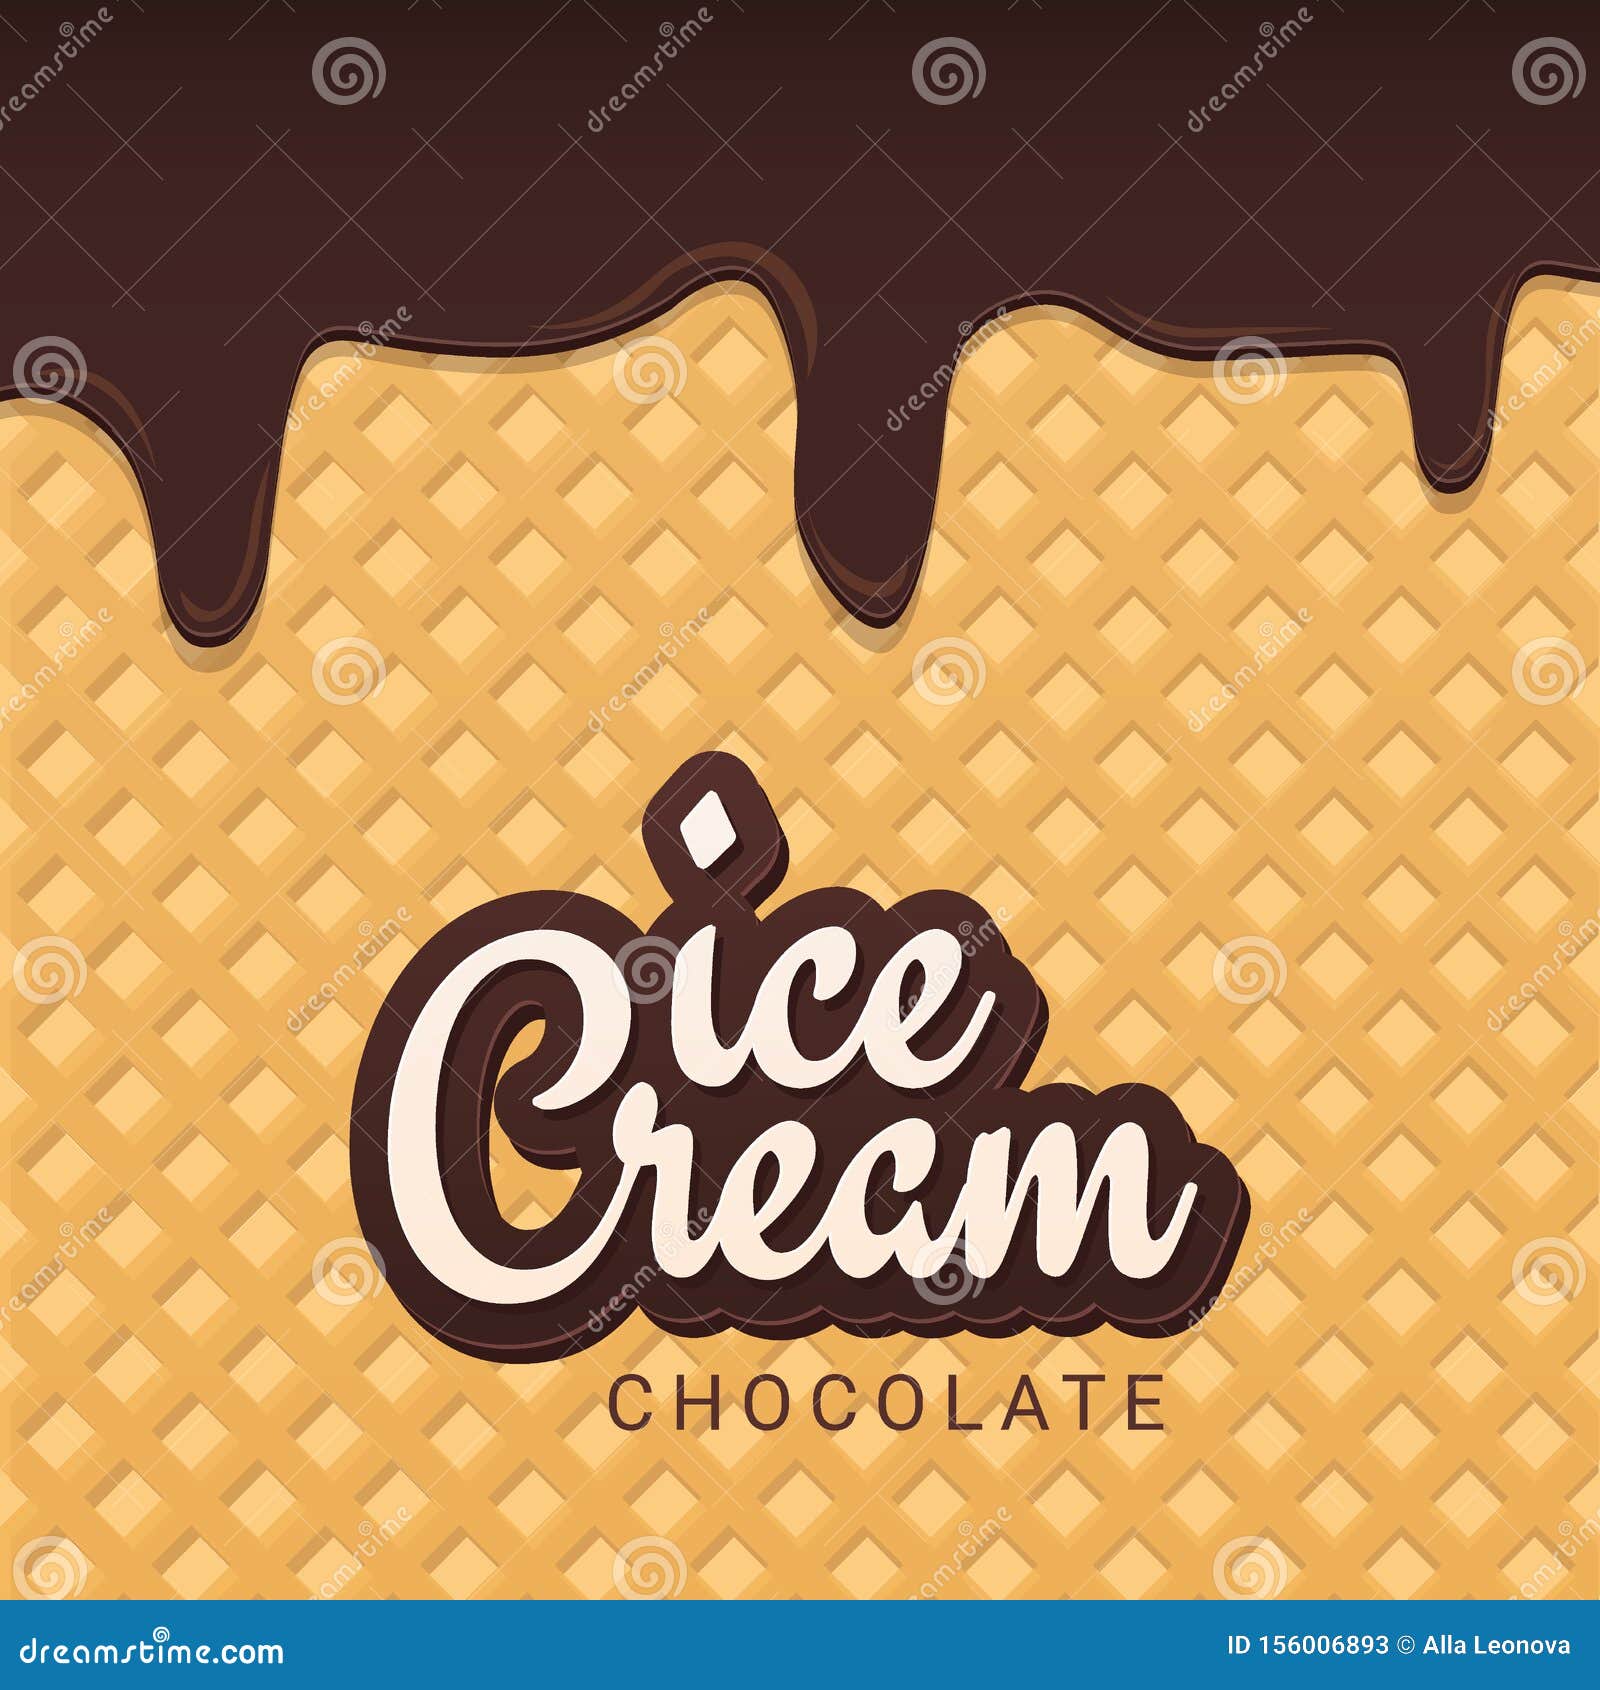 Ăn kem vào mùa hè là sự thưởng thức thật tuyệt vời. Hãy cùng thưởng thức hương vị ngọt ngào và mát lạnh của kem trong hình ảnh này. (Translation: Eating ice cream in the summer is a wonderful treat. Let\'s enjoy the sweet and refreshing taste of ice cream in this image.)